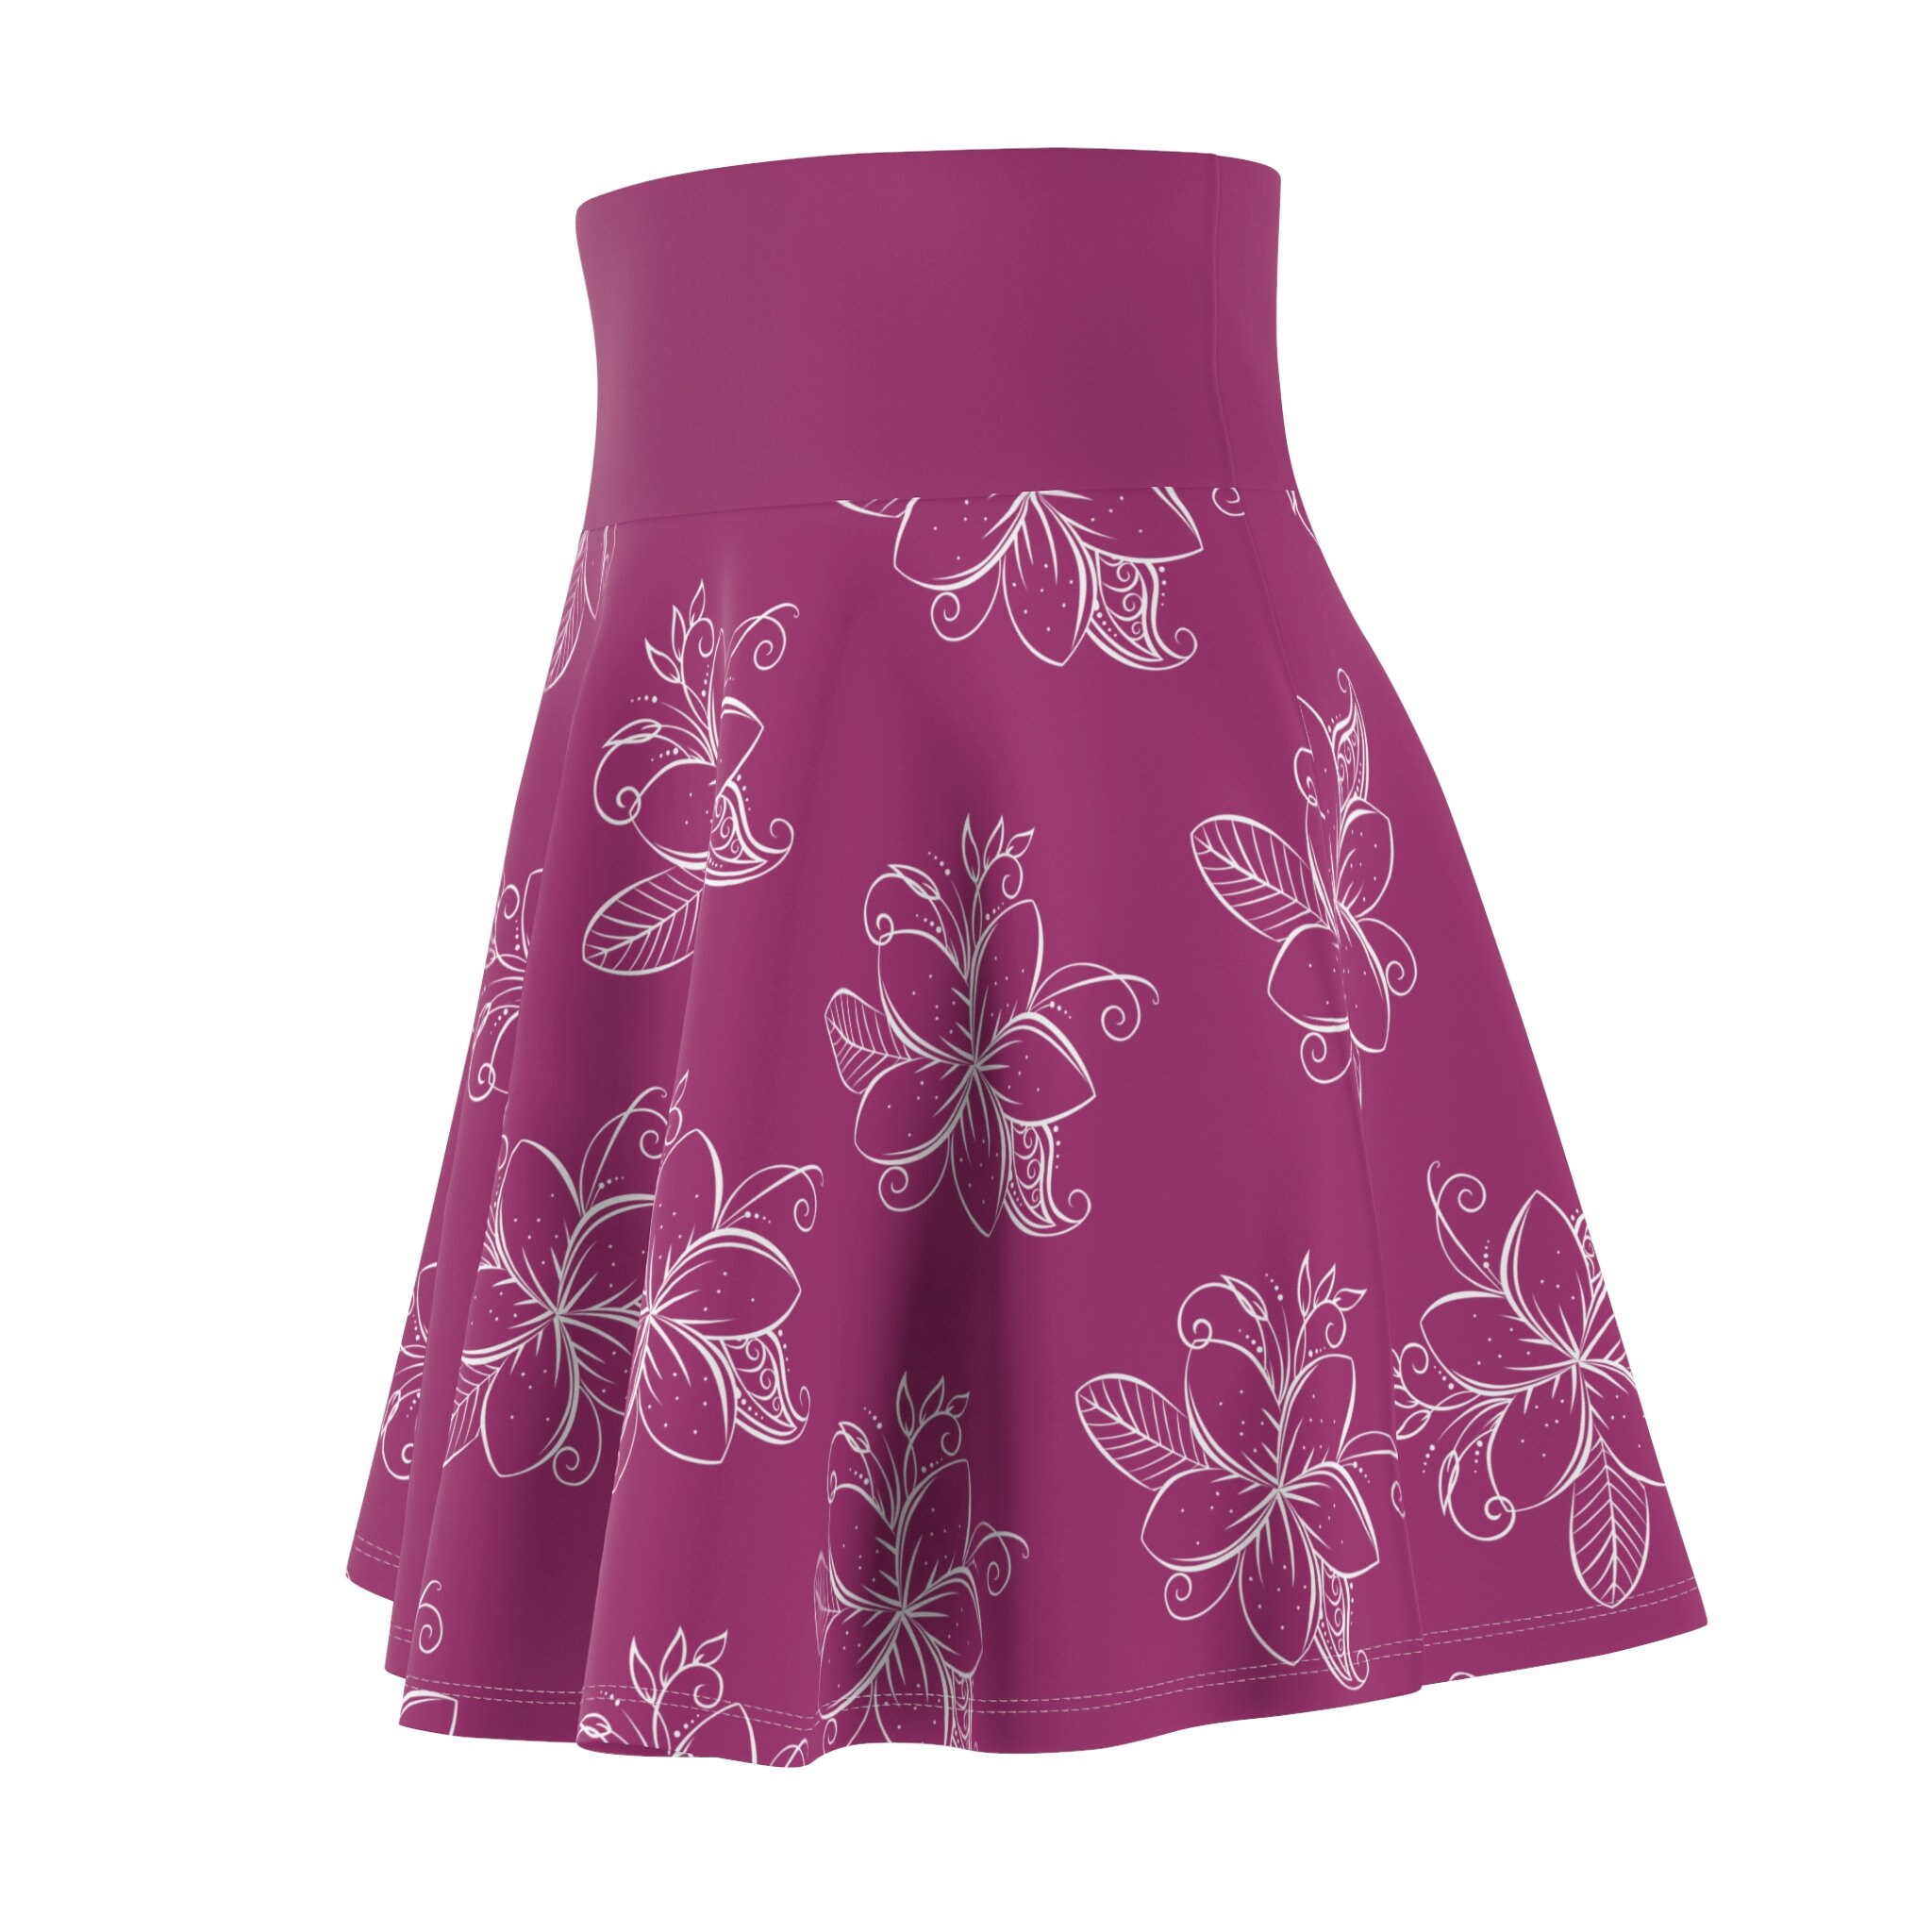 Orchard Flower Pink with Plumerias Skater Skirt, Women's Skater Skirt